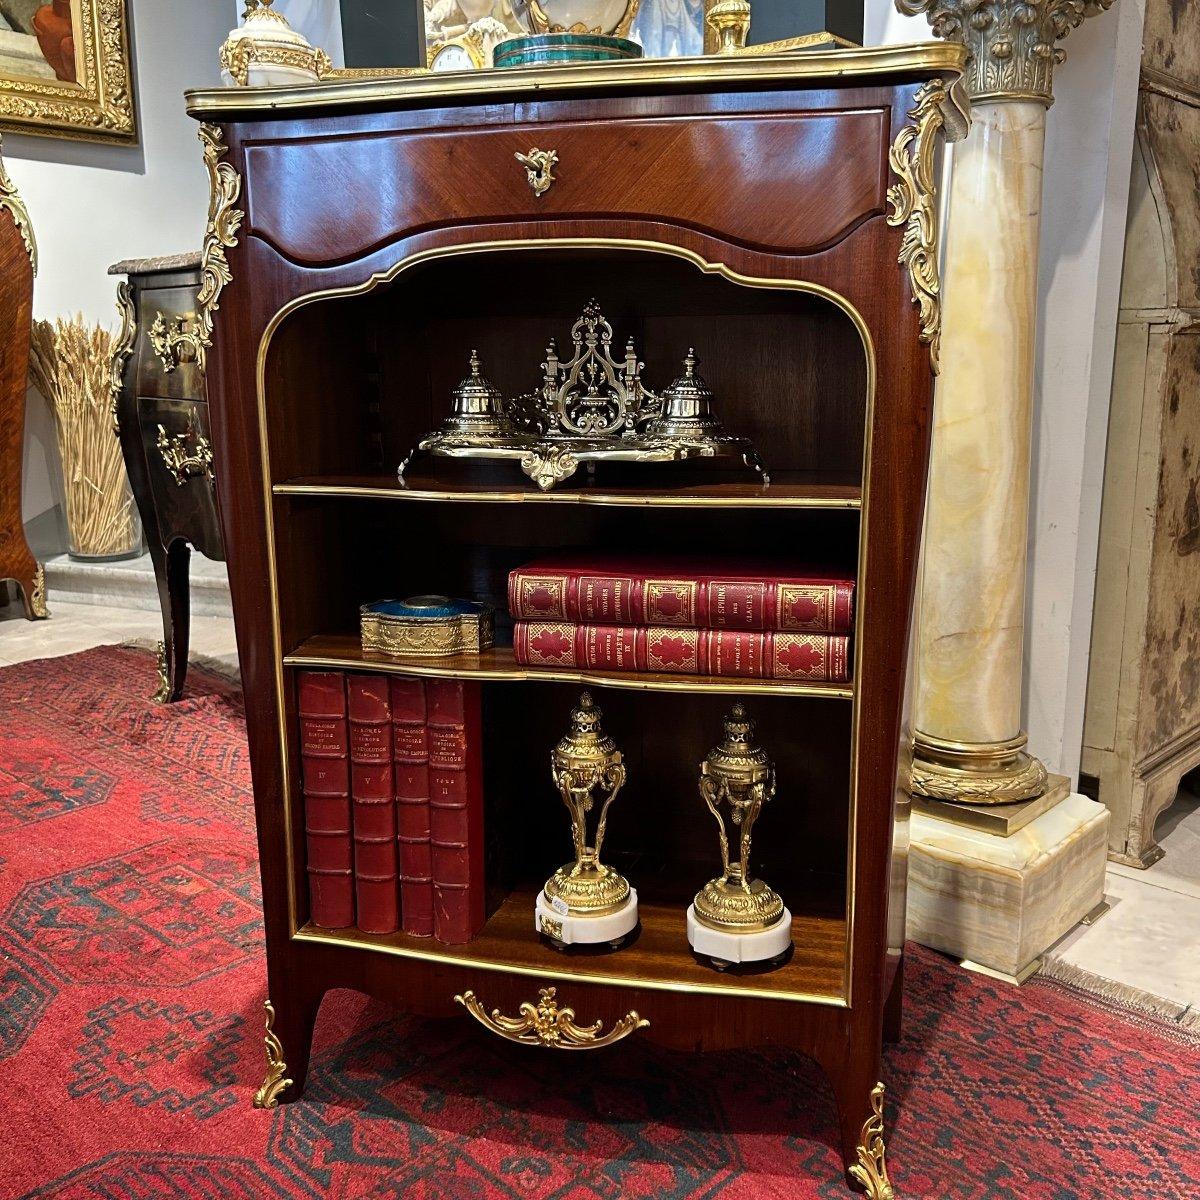 Wir präsentieren Ihnen dieses seltene und charmante kleine offene Bücherregal aus dem 19. Jahrhundert im Stil von Louis XV, das auf Französisch als 